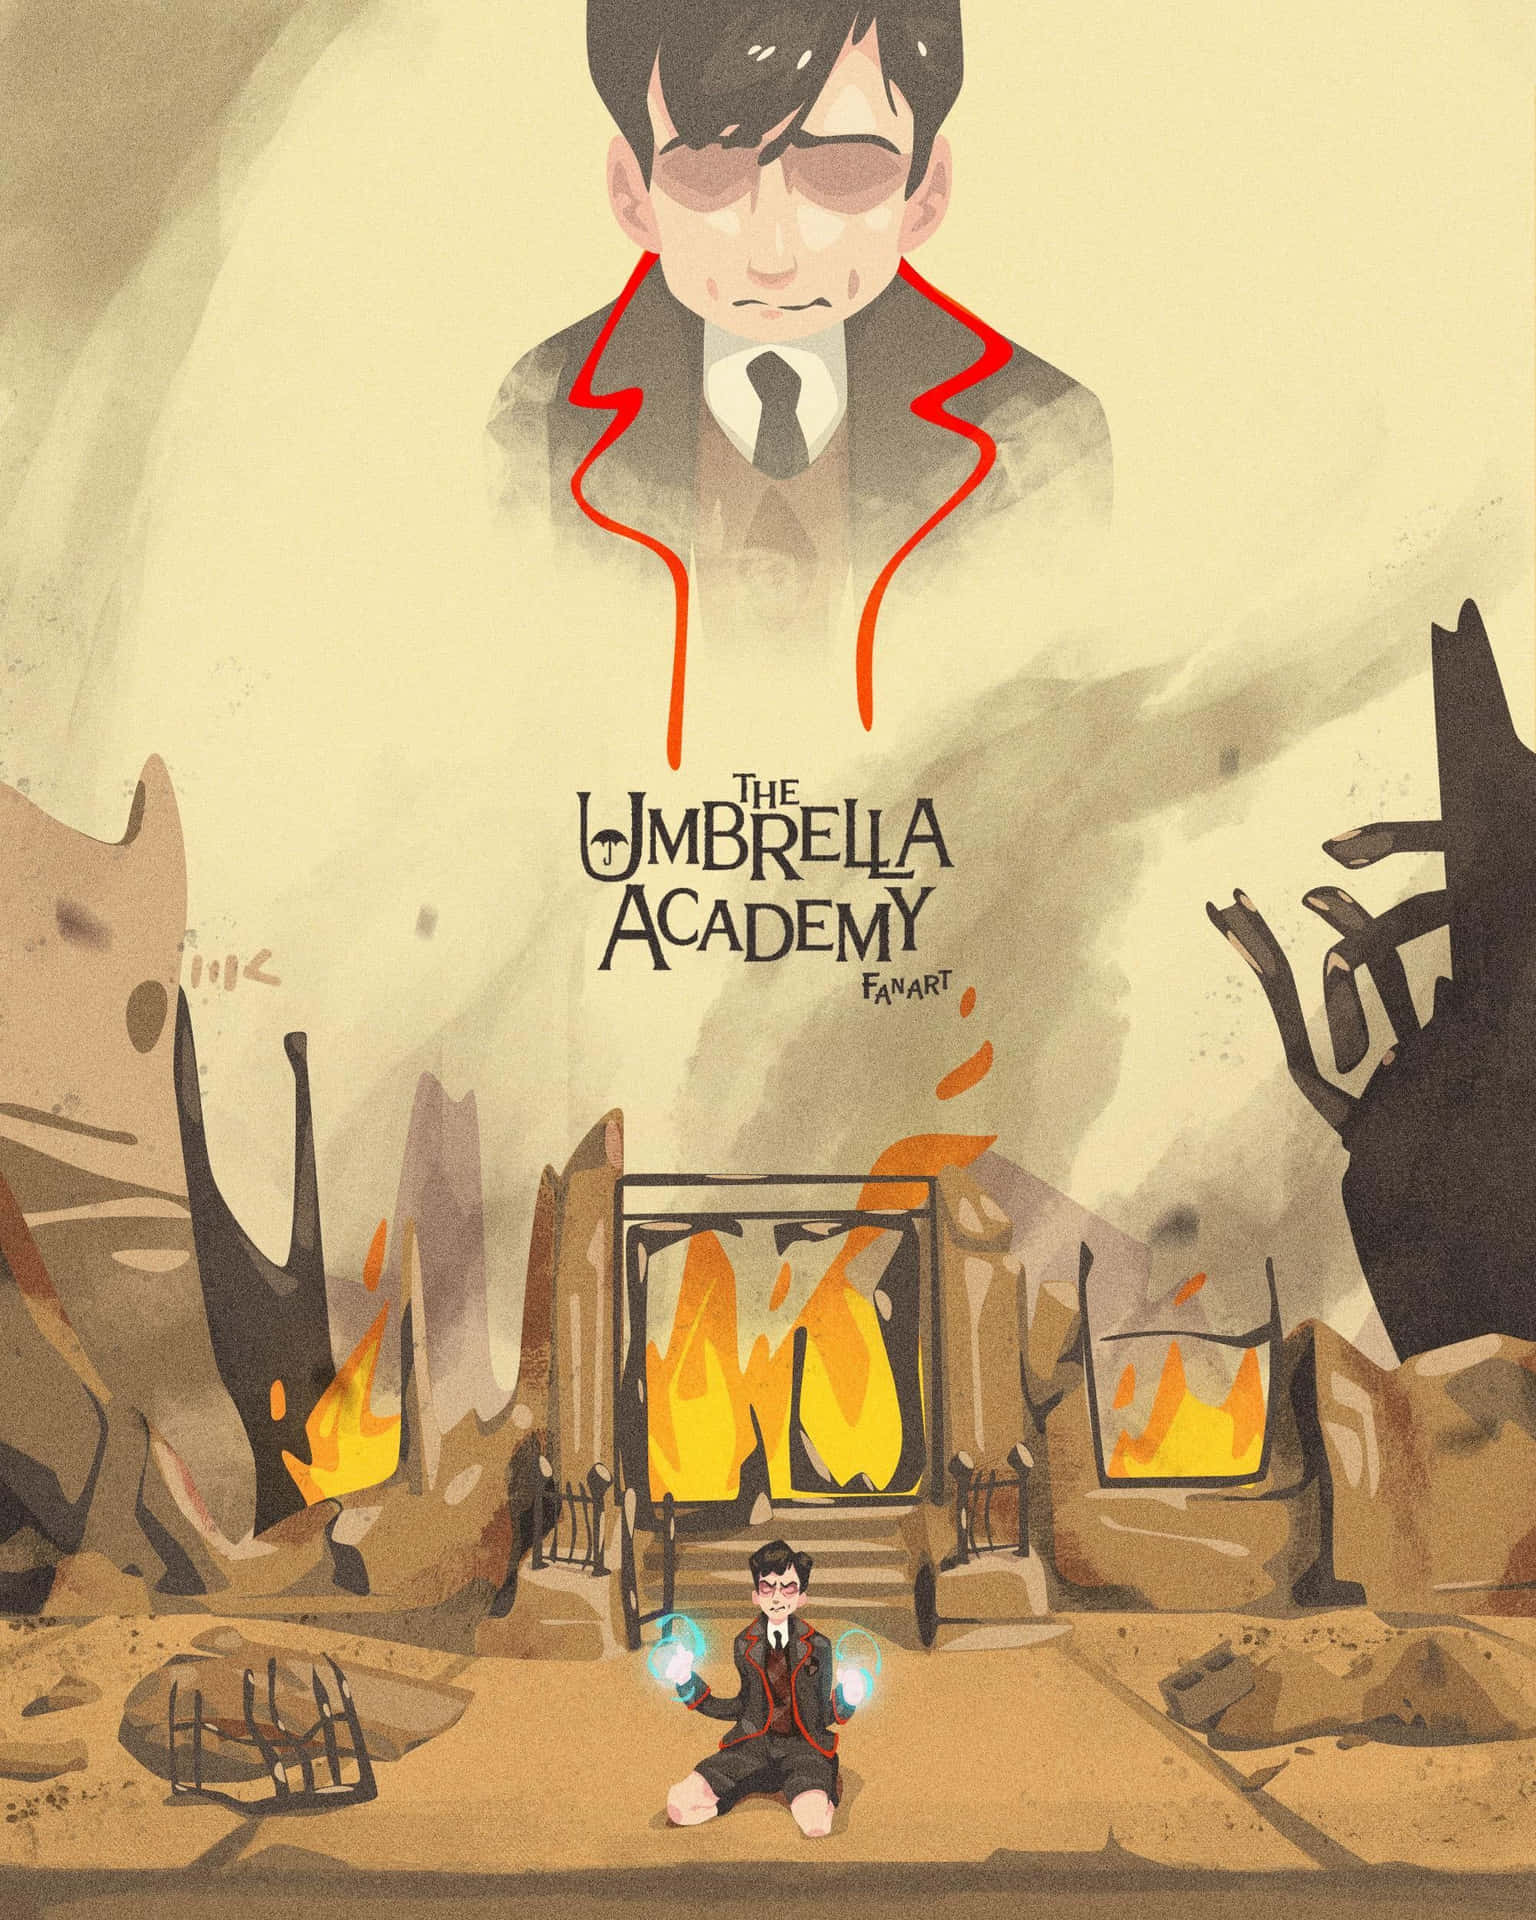 Five Umbrella Academy Digital Art Wallpaper